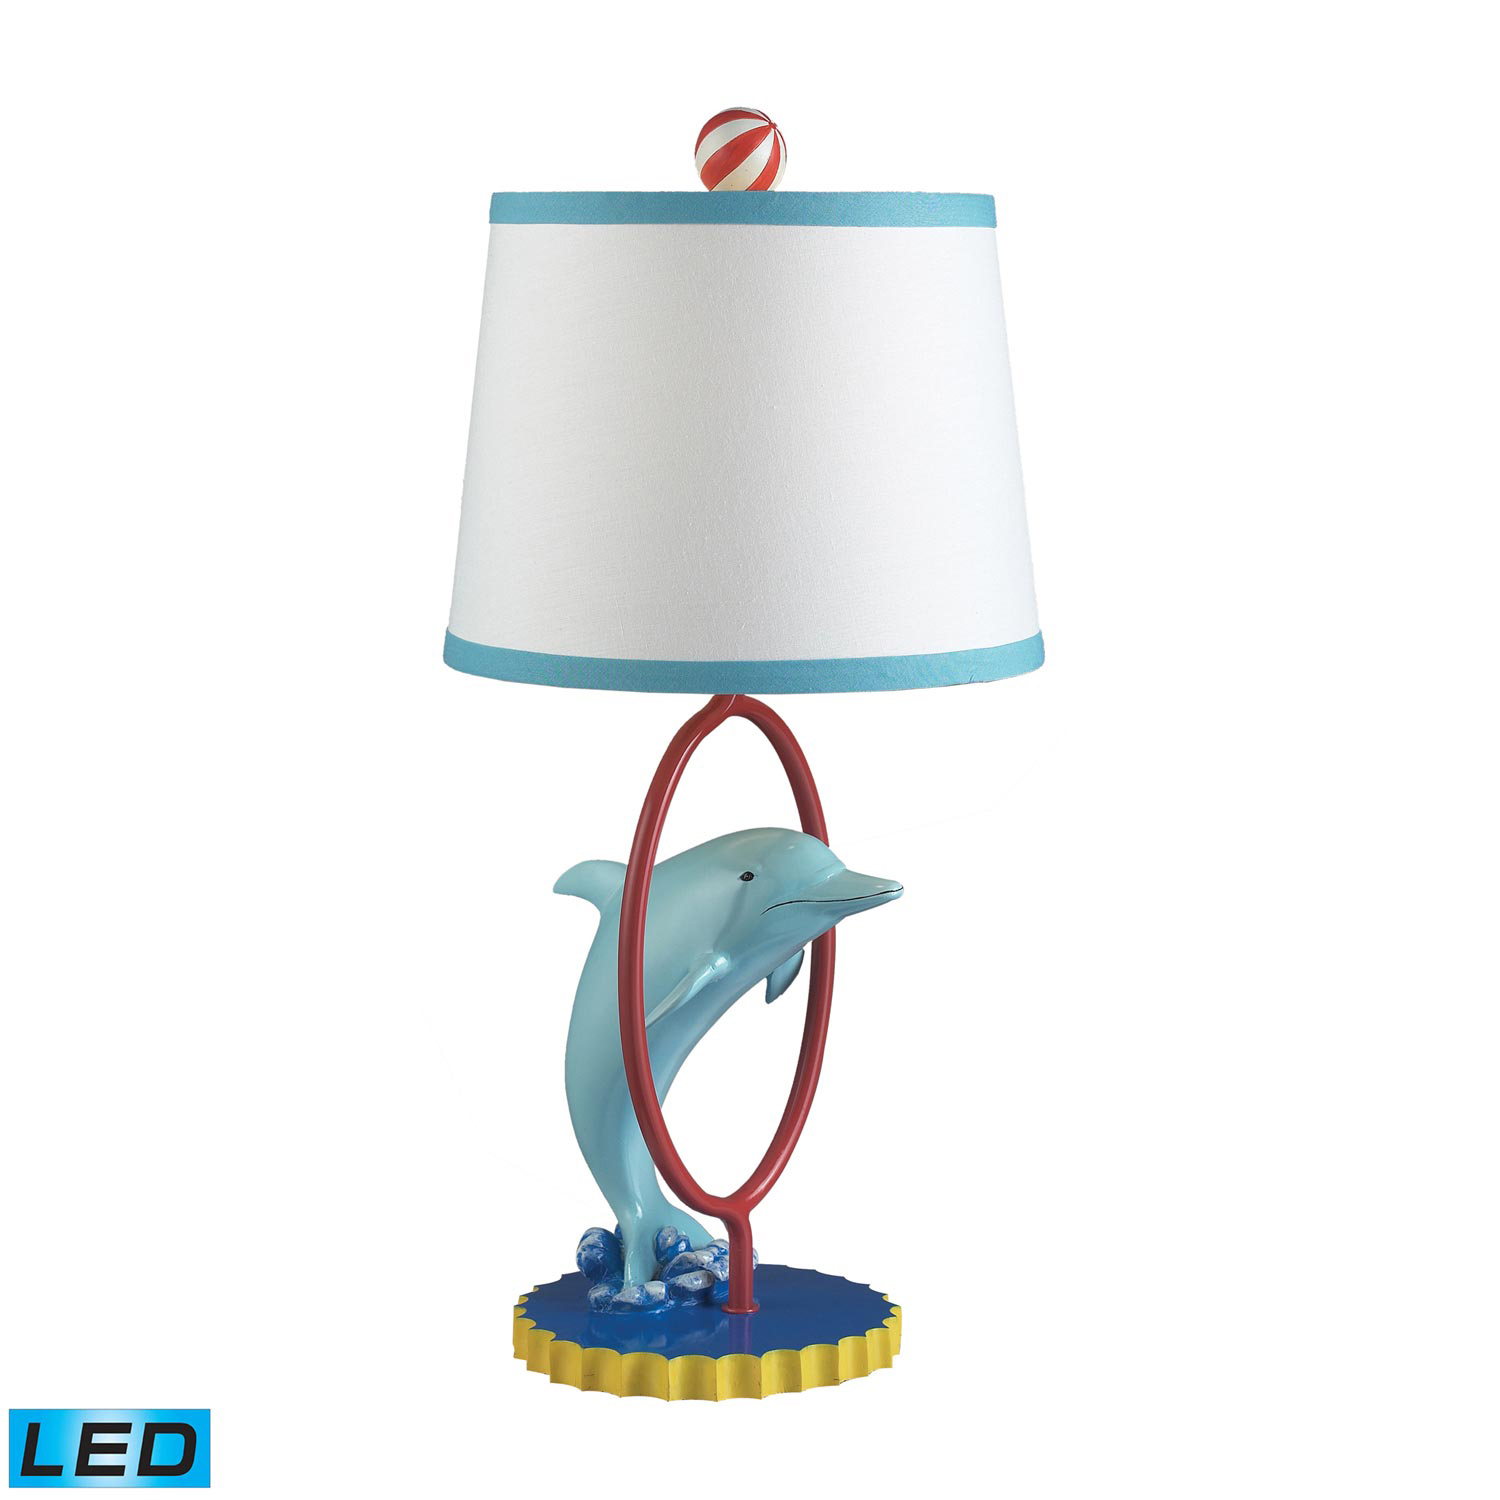 Elk Lighting 112-1104-LED Davy Table Lamp - Gloss